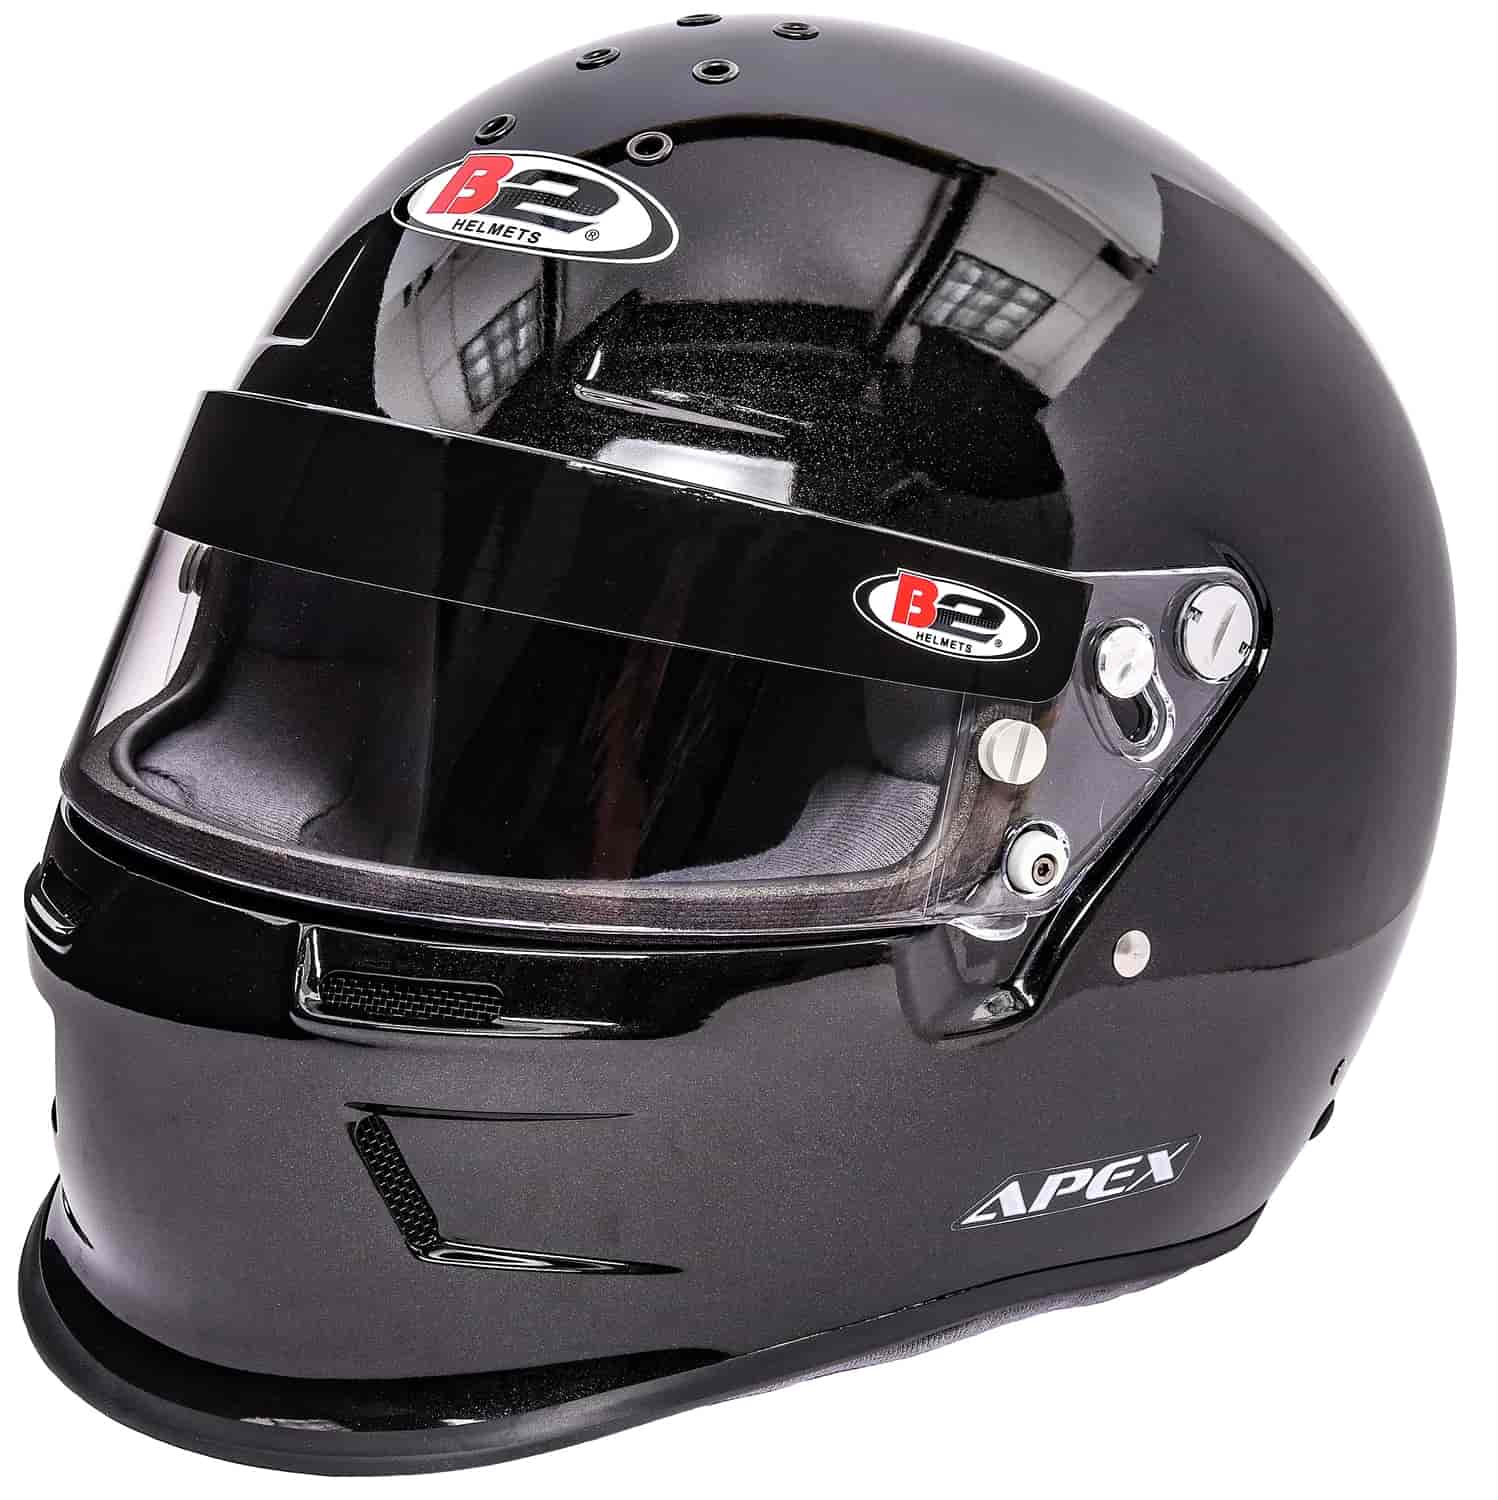 Apex Helmet Black - Small